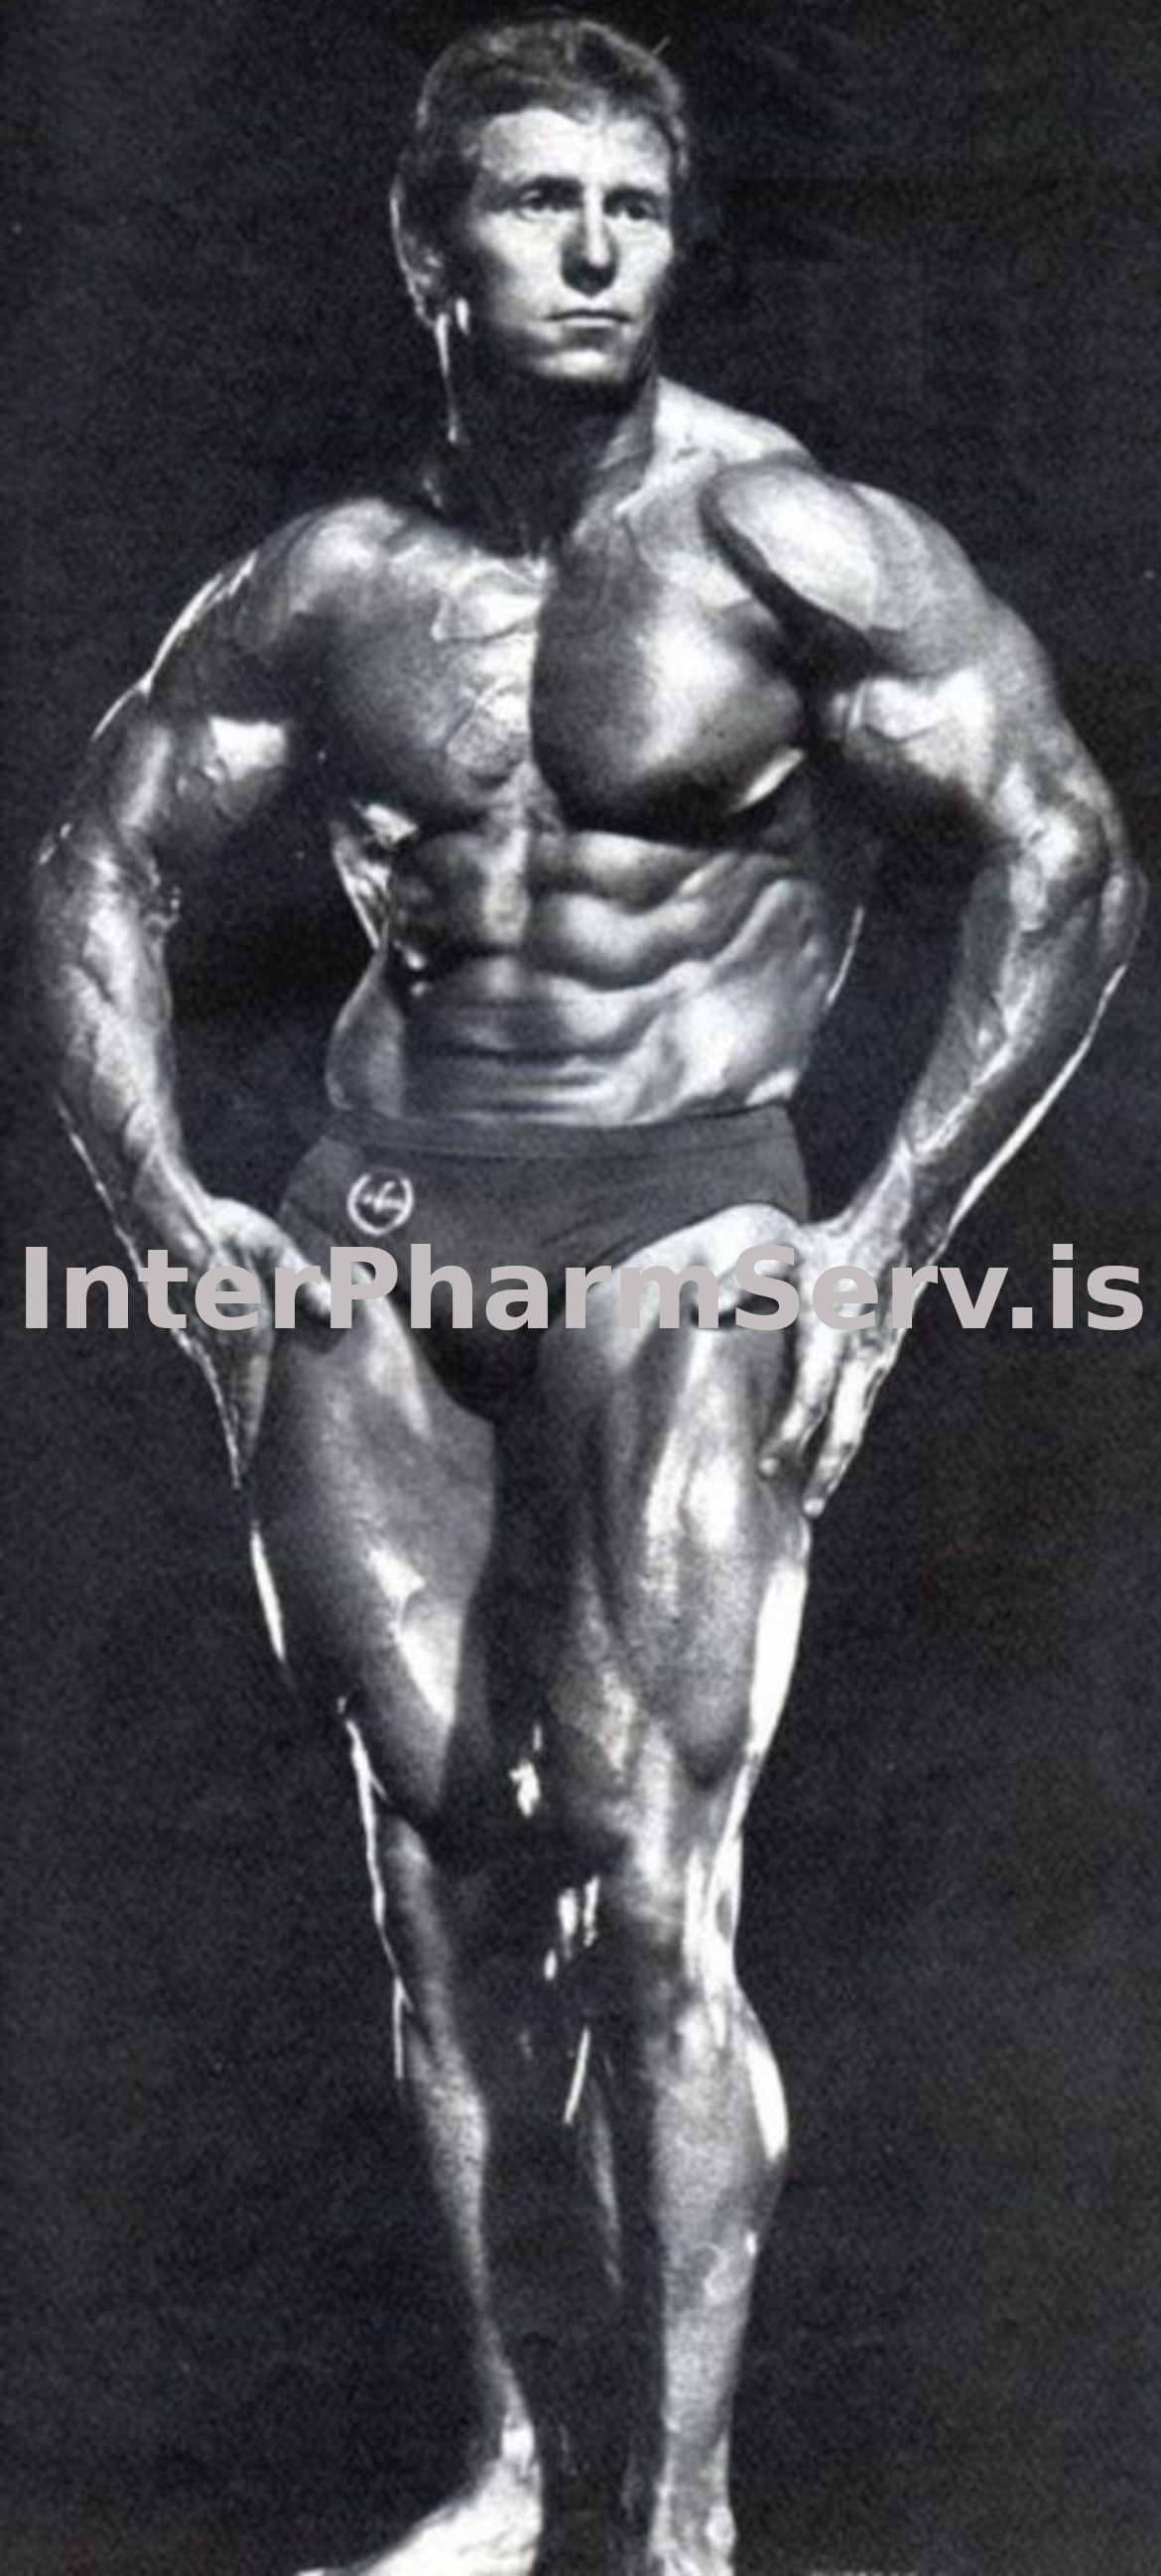 Ken Waller using steroid